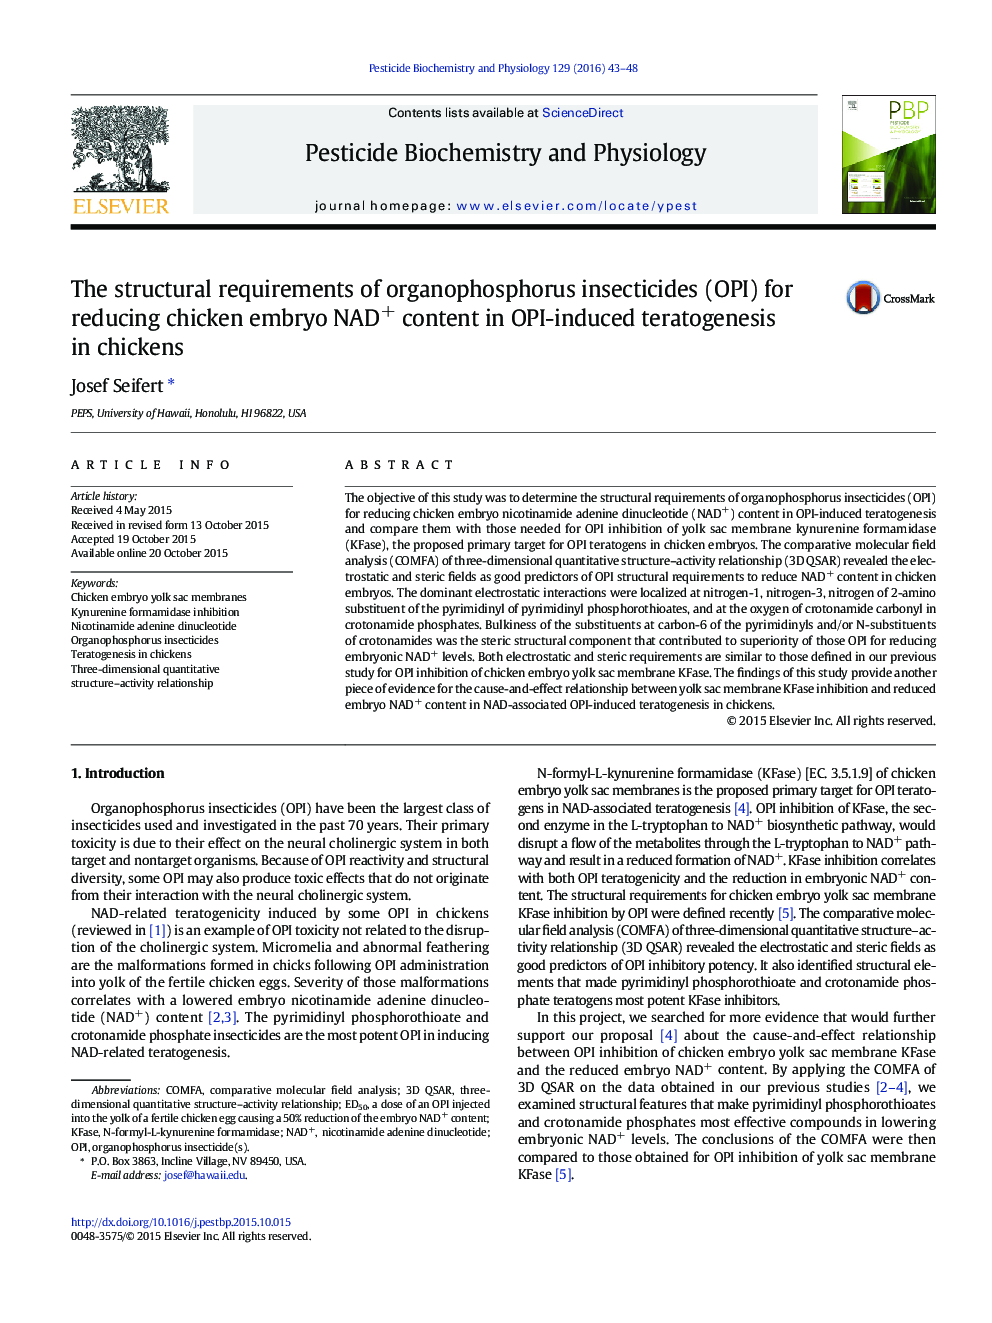 الزامات ساختاری حشره کش های ارگانوفسفره (OPI) برای کاهش محتوای NAD + جنین مرغ در تراتوژنز ناشی از OPI در جوجه ها